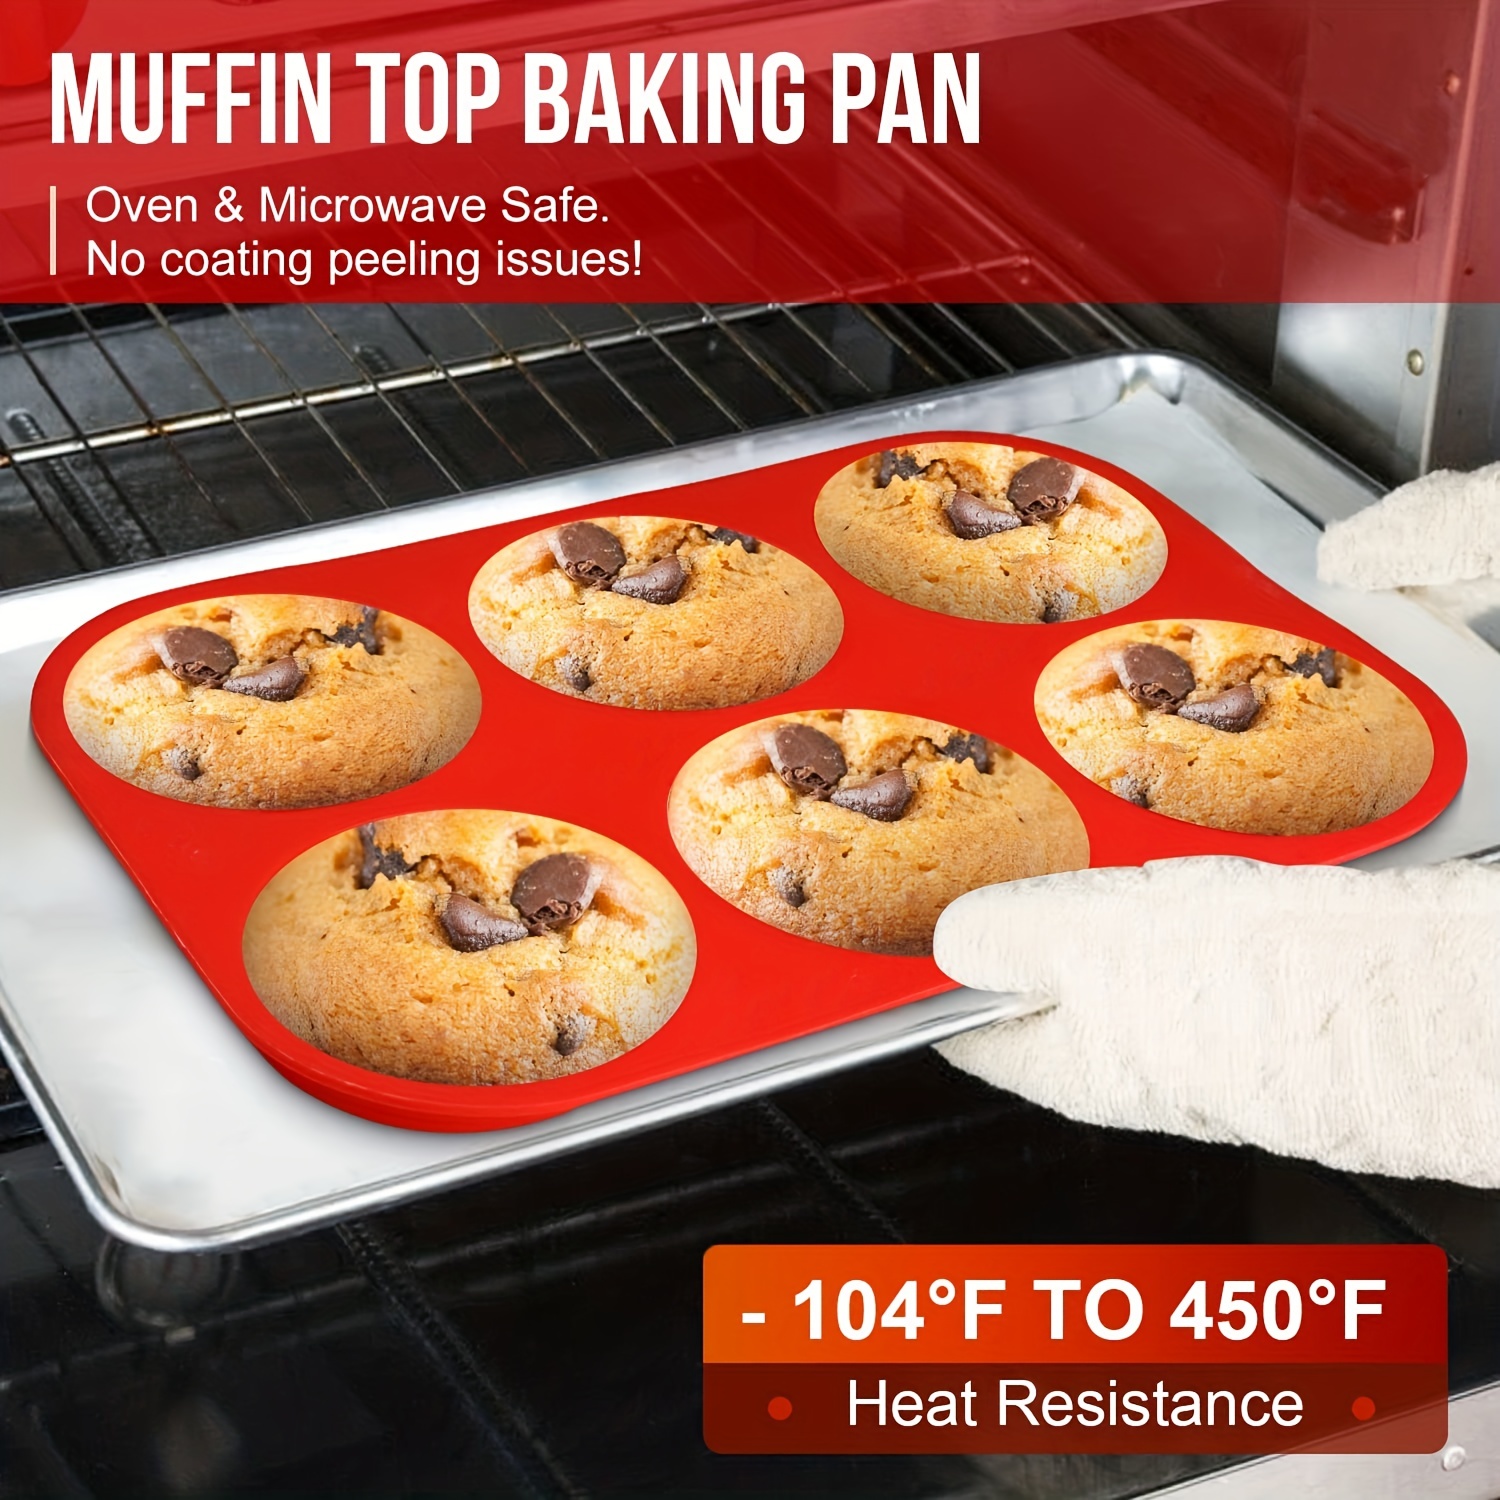 MUFFIN TOP BAKING PAN